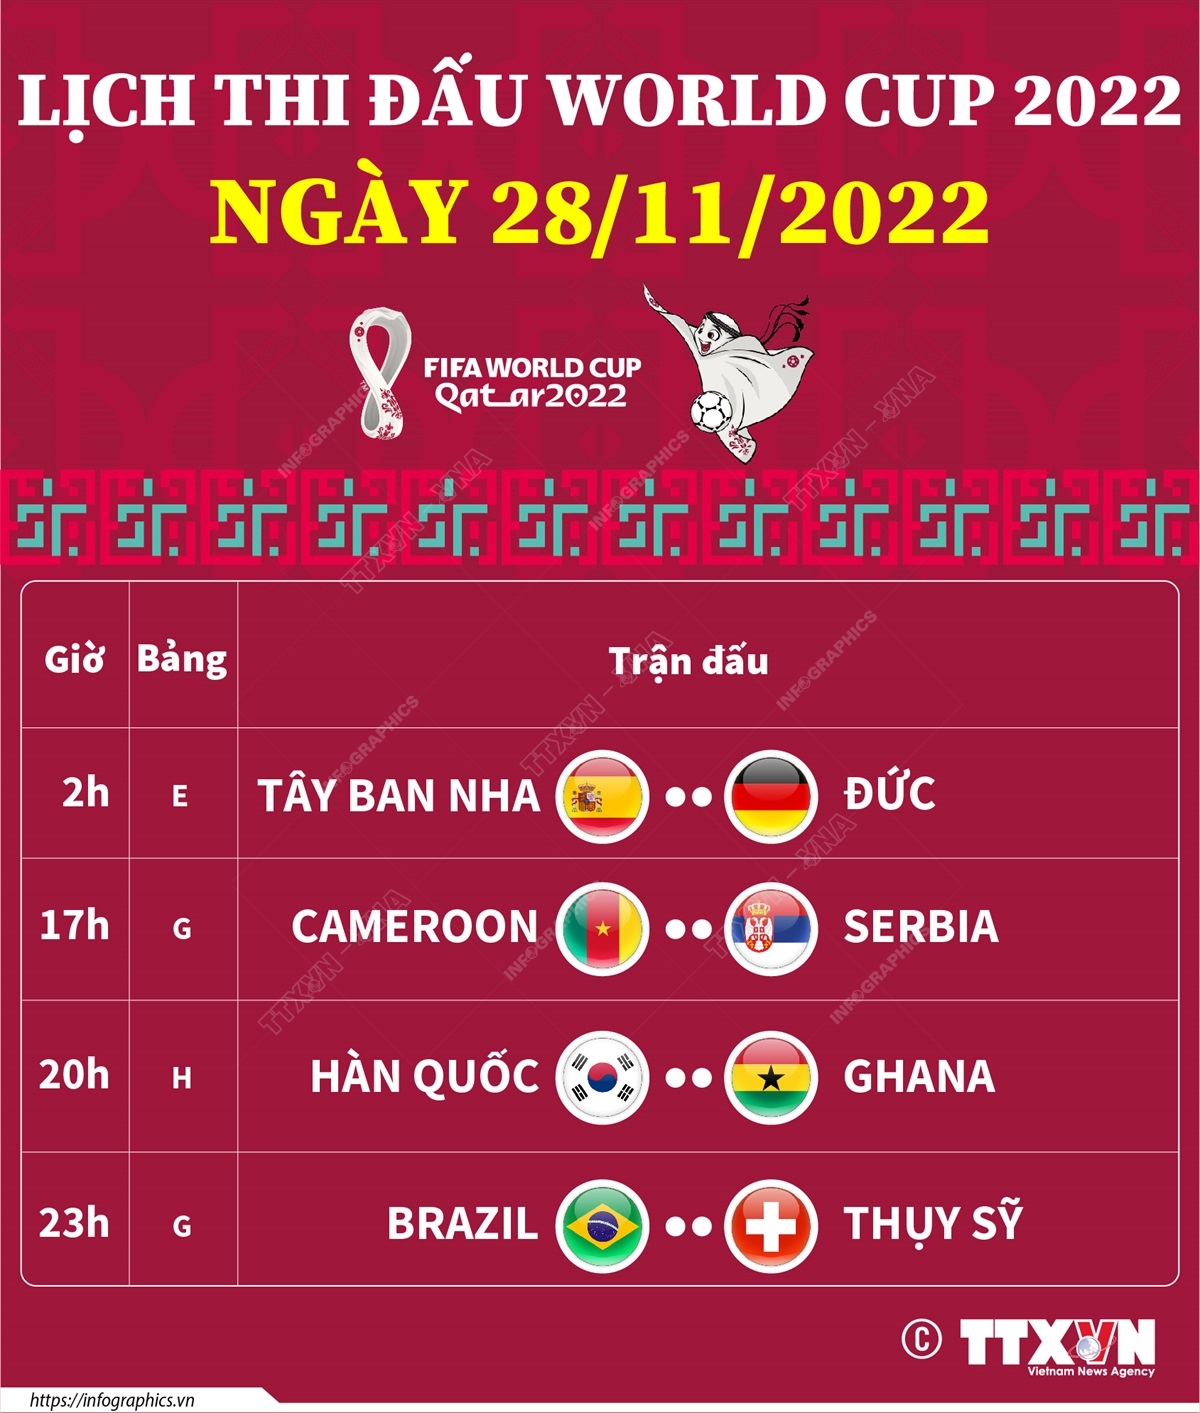 Lịch thi đấu World Cup 2022 ngày 28/11/2022